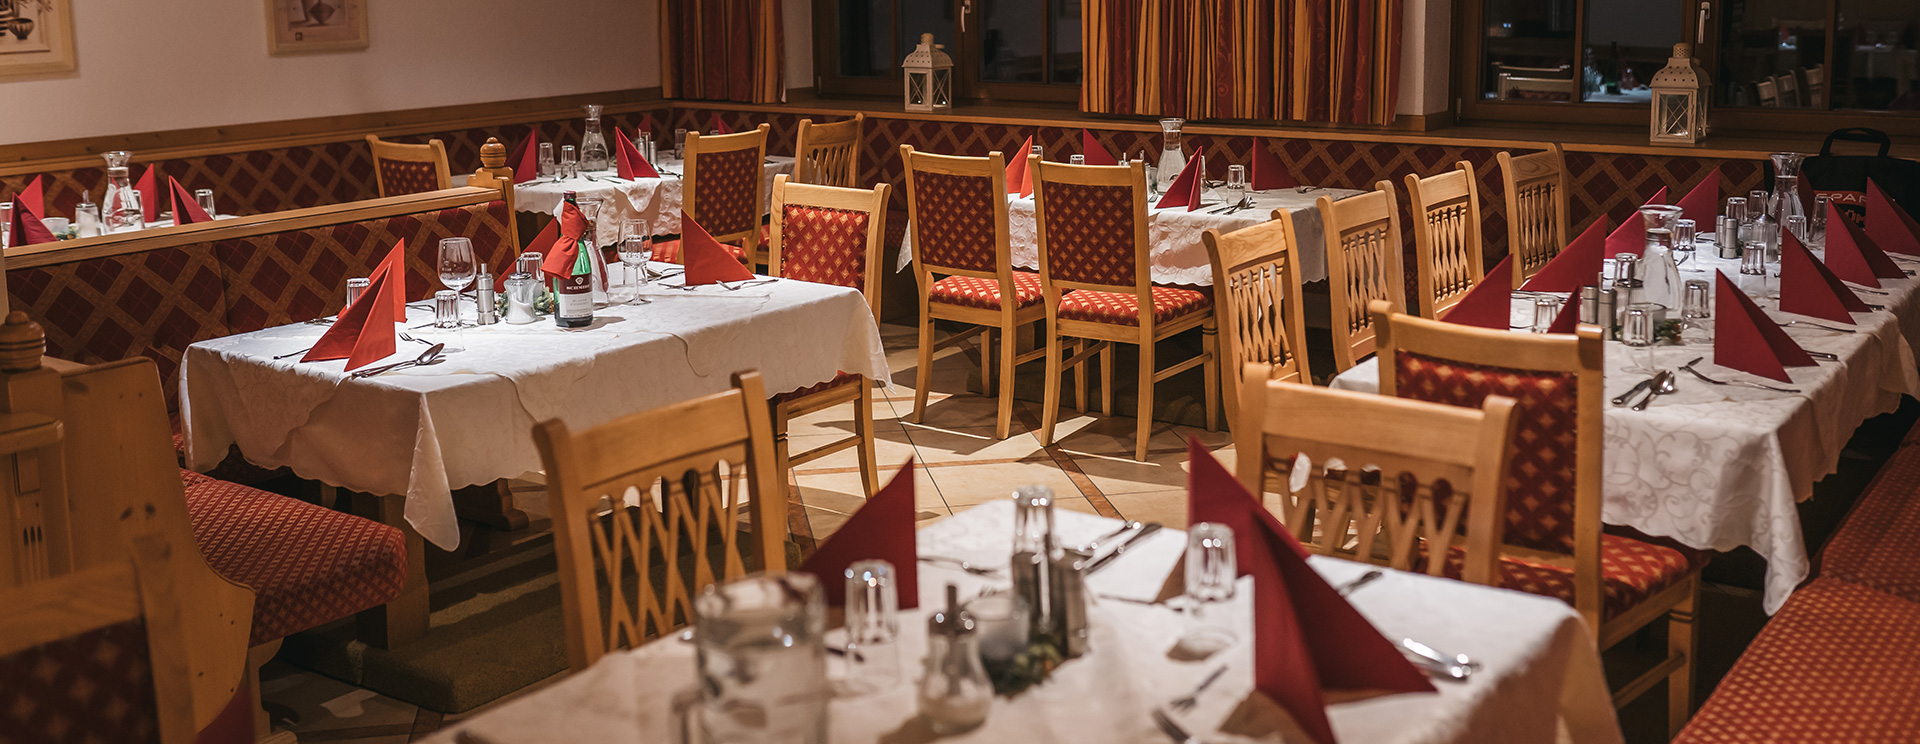 Das Hotel Austria Restaurant mit traditioneller Tischdekoration, roten Akzenten und gemütlichem Ambiente, wartet auf die Ankunft der Gäste